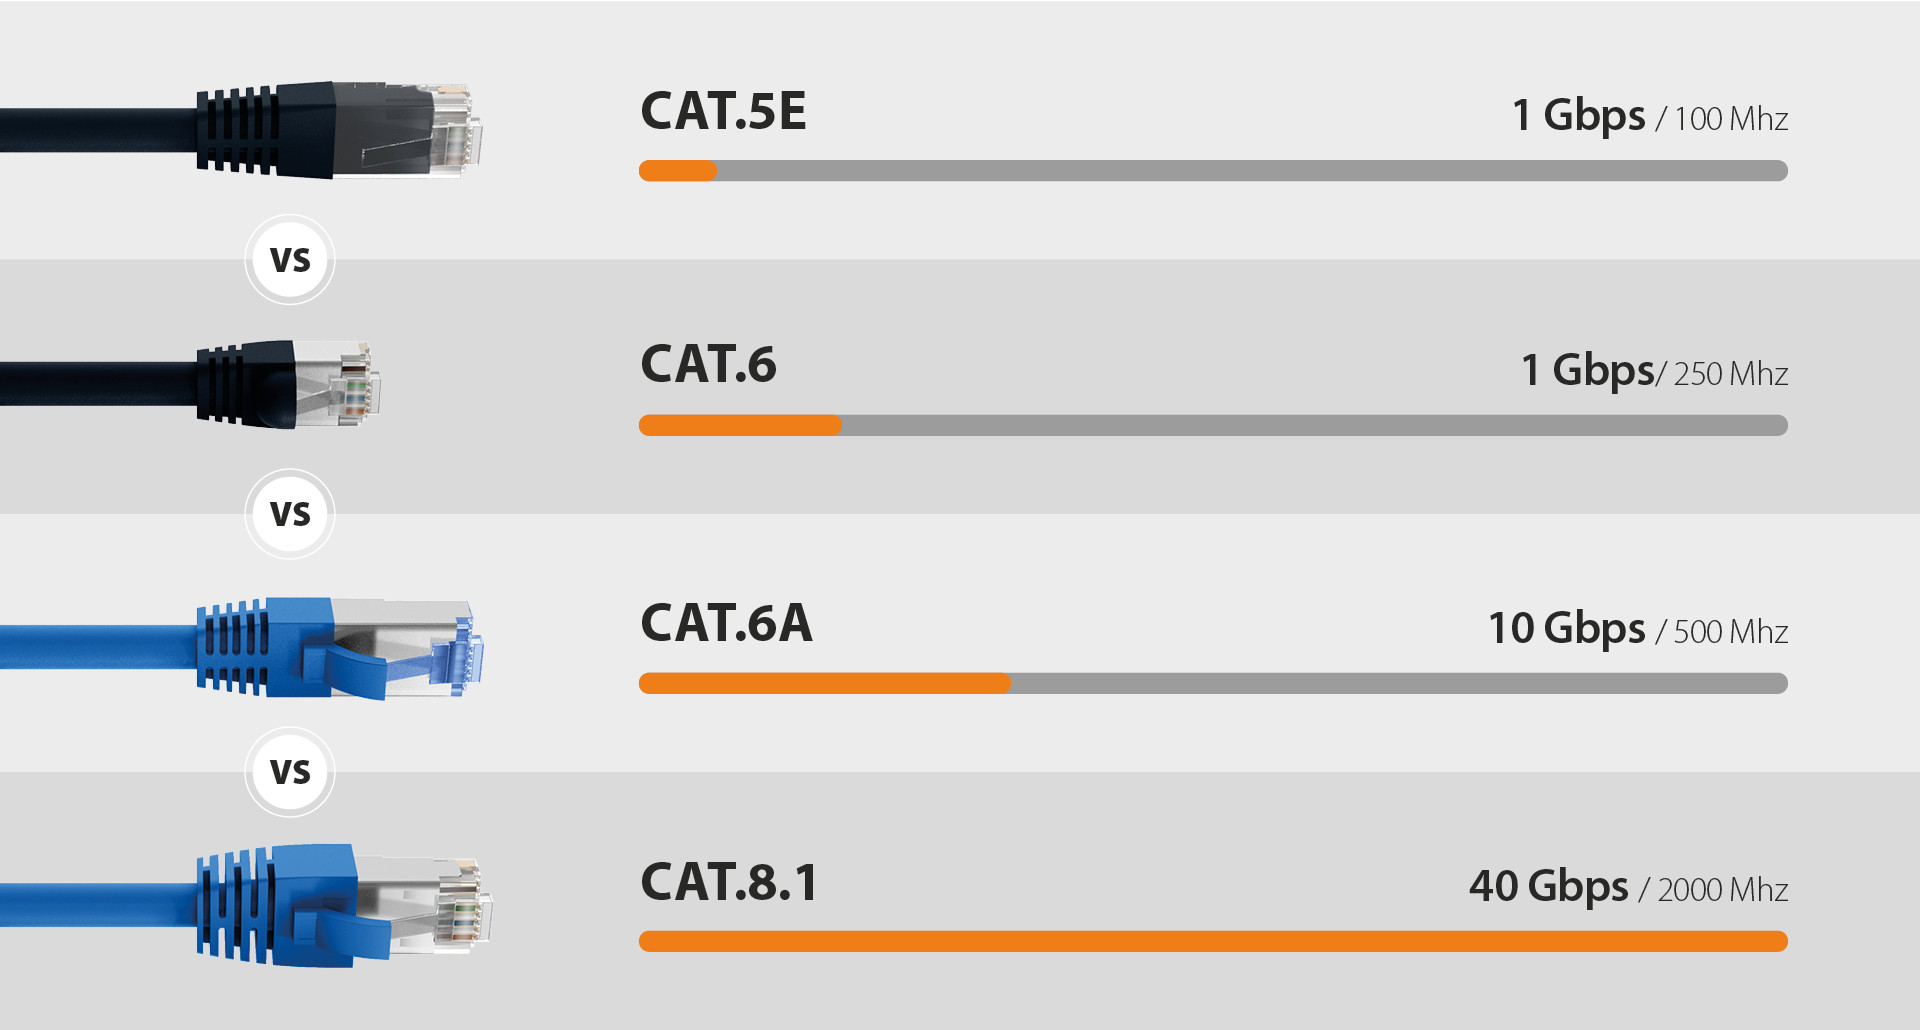 Vergleich der Netzwerkkabelkategorien CAT.5E, CAT.6, CAT.6A und CAT.8.1 mit ihren Übertragungsgeschwindigkeiten und Frequenzen.